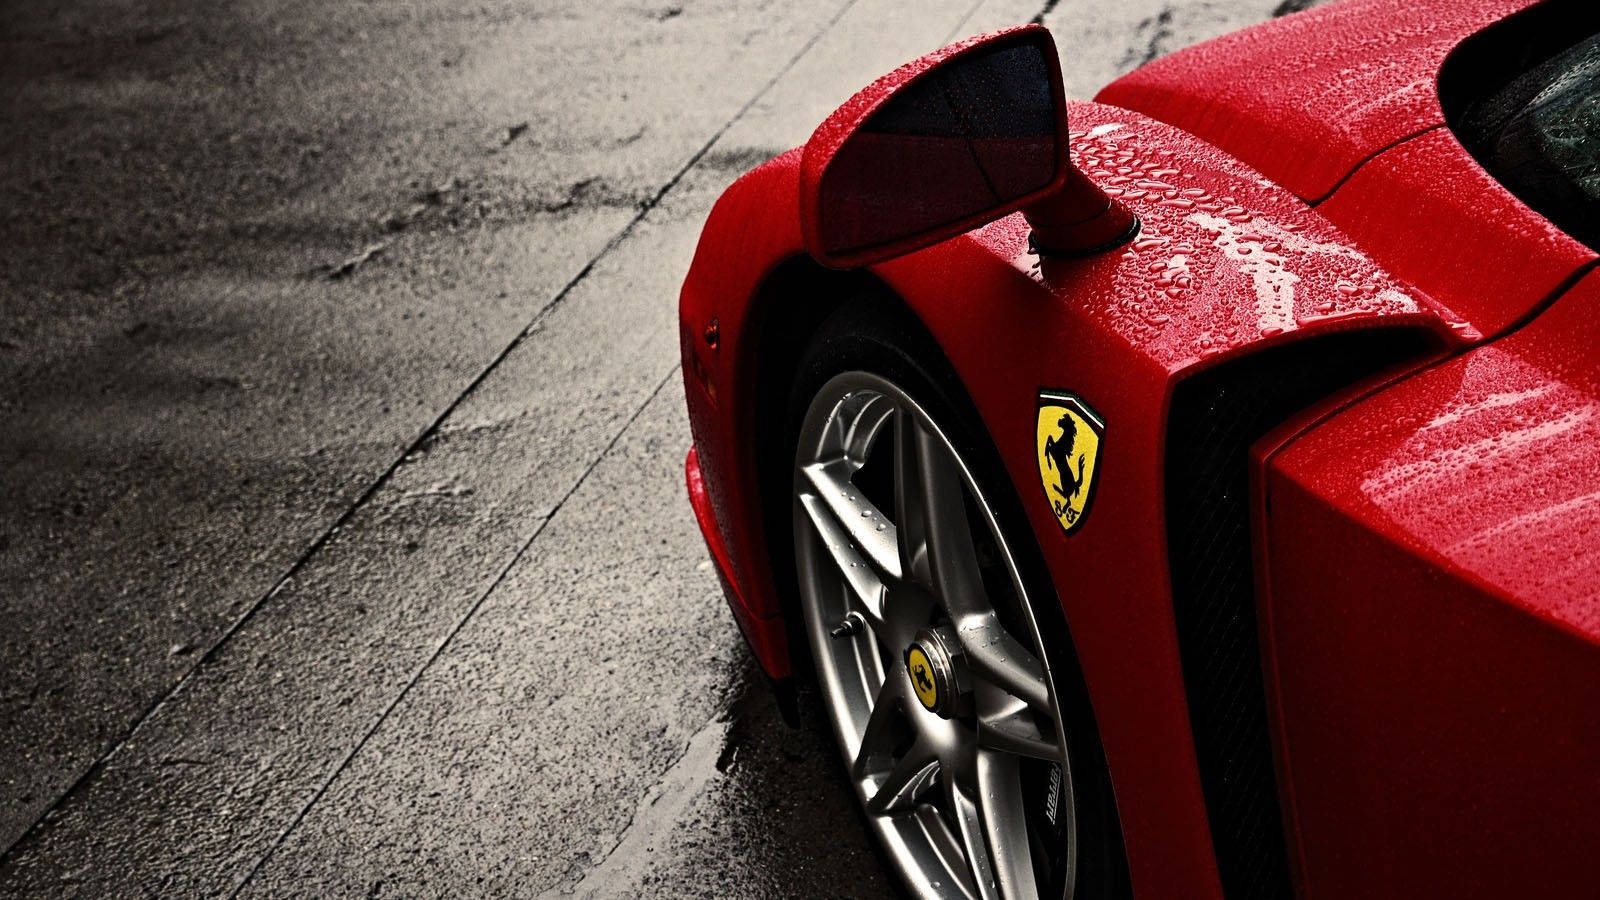 Ferrari Supercar In Rain